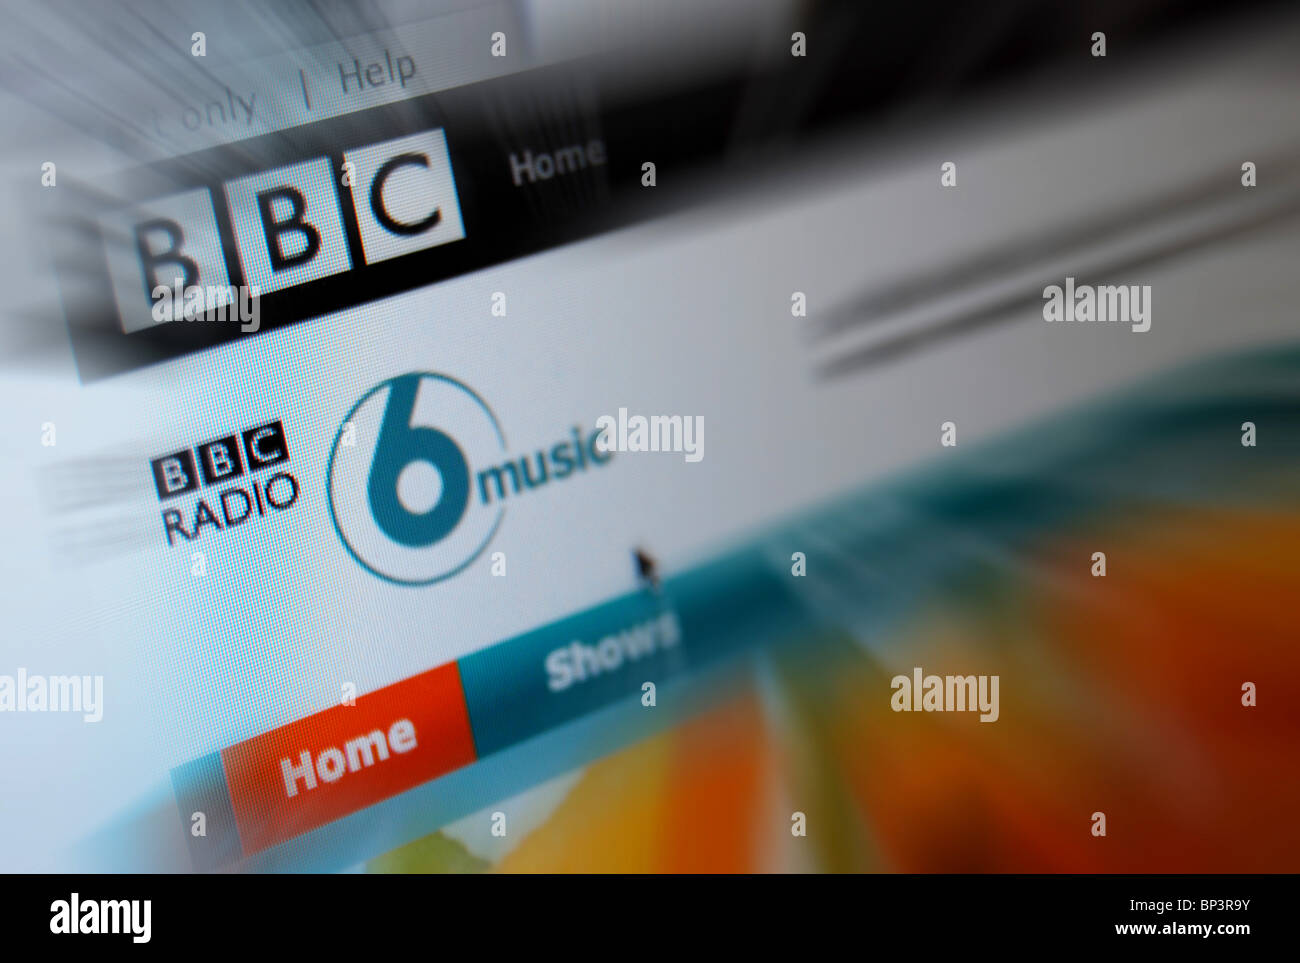 Une photo illustration de la BBC 6 Music Site Web ou page d'accueil Banque D'Images